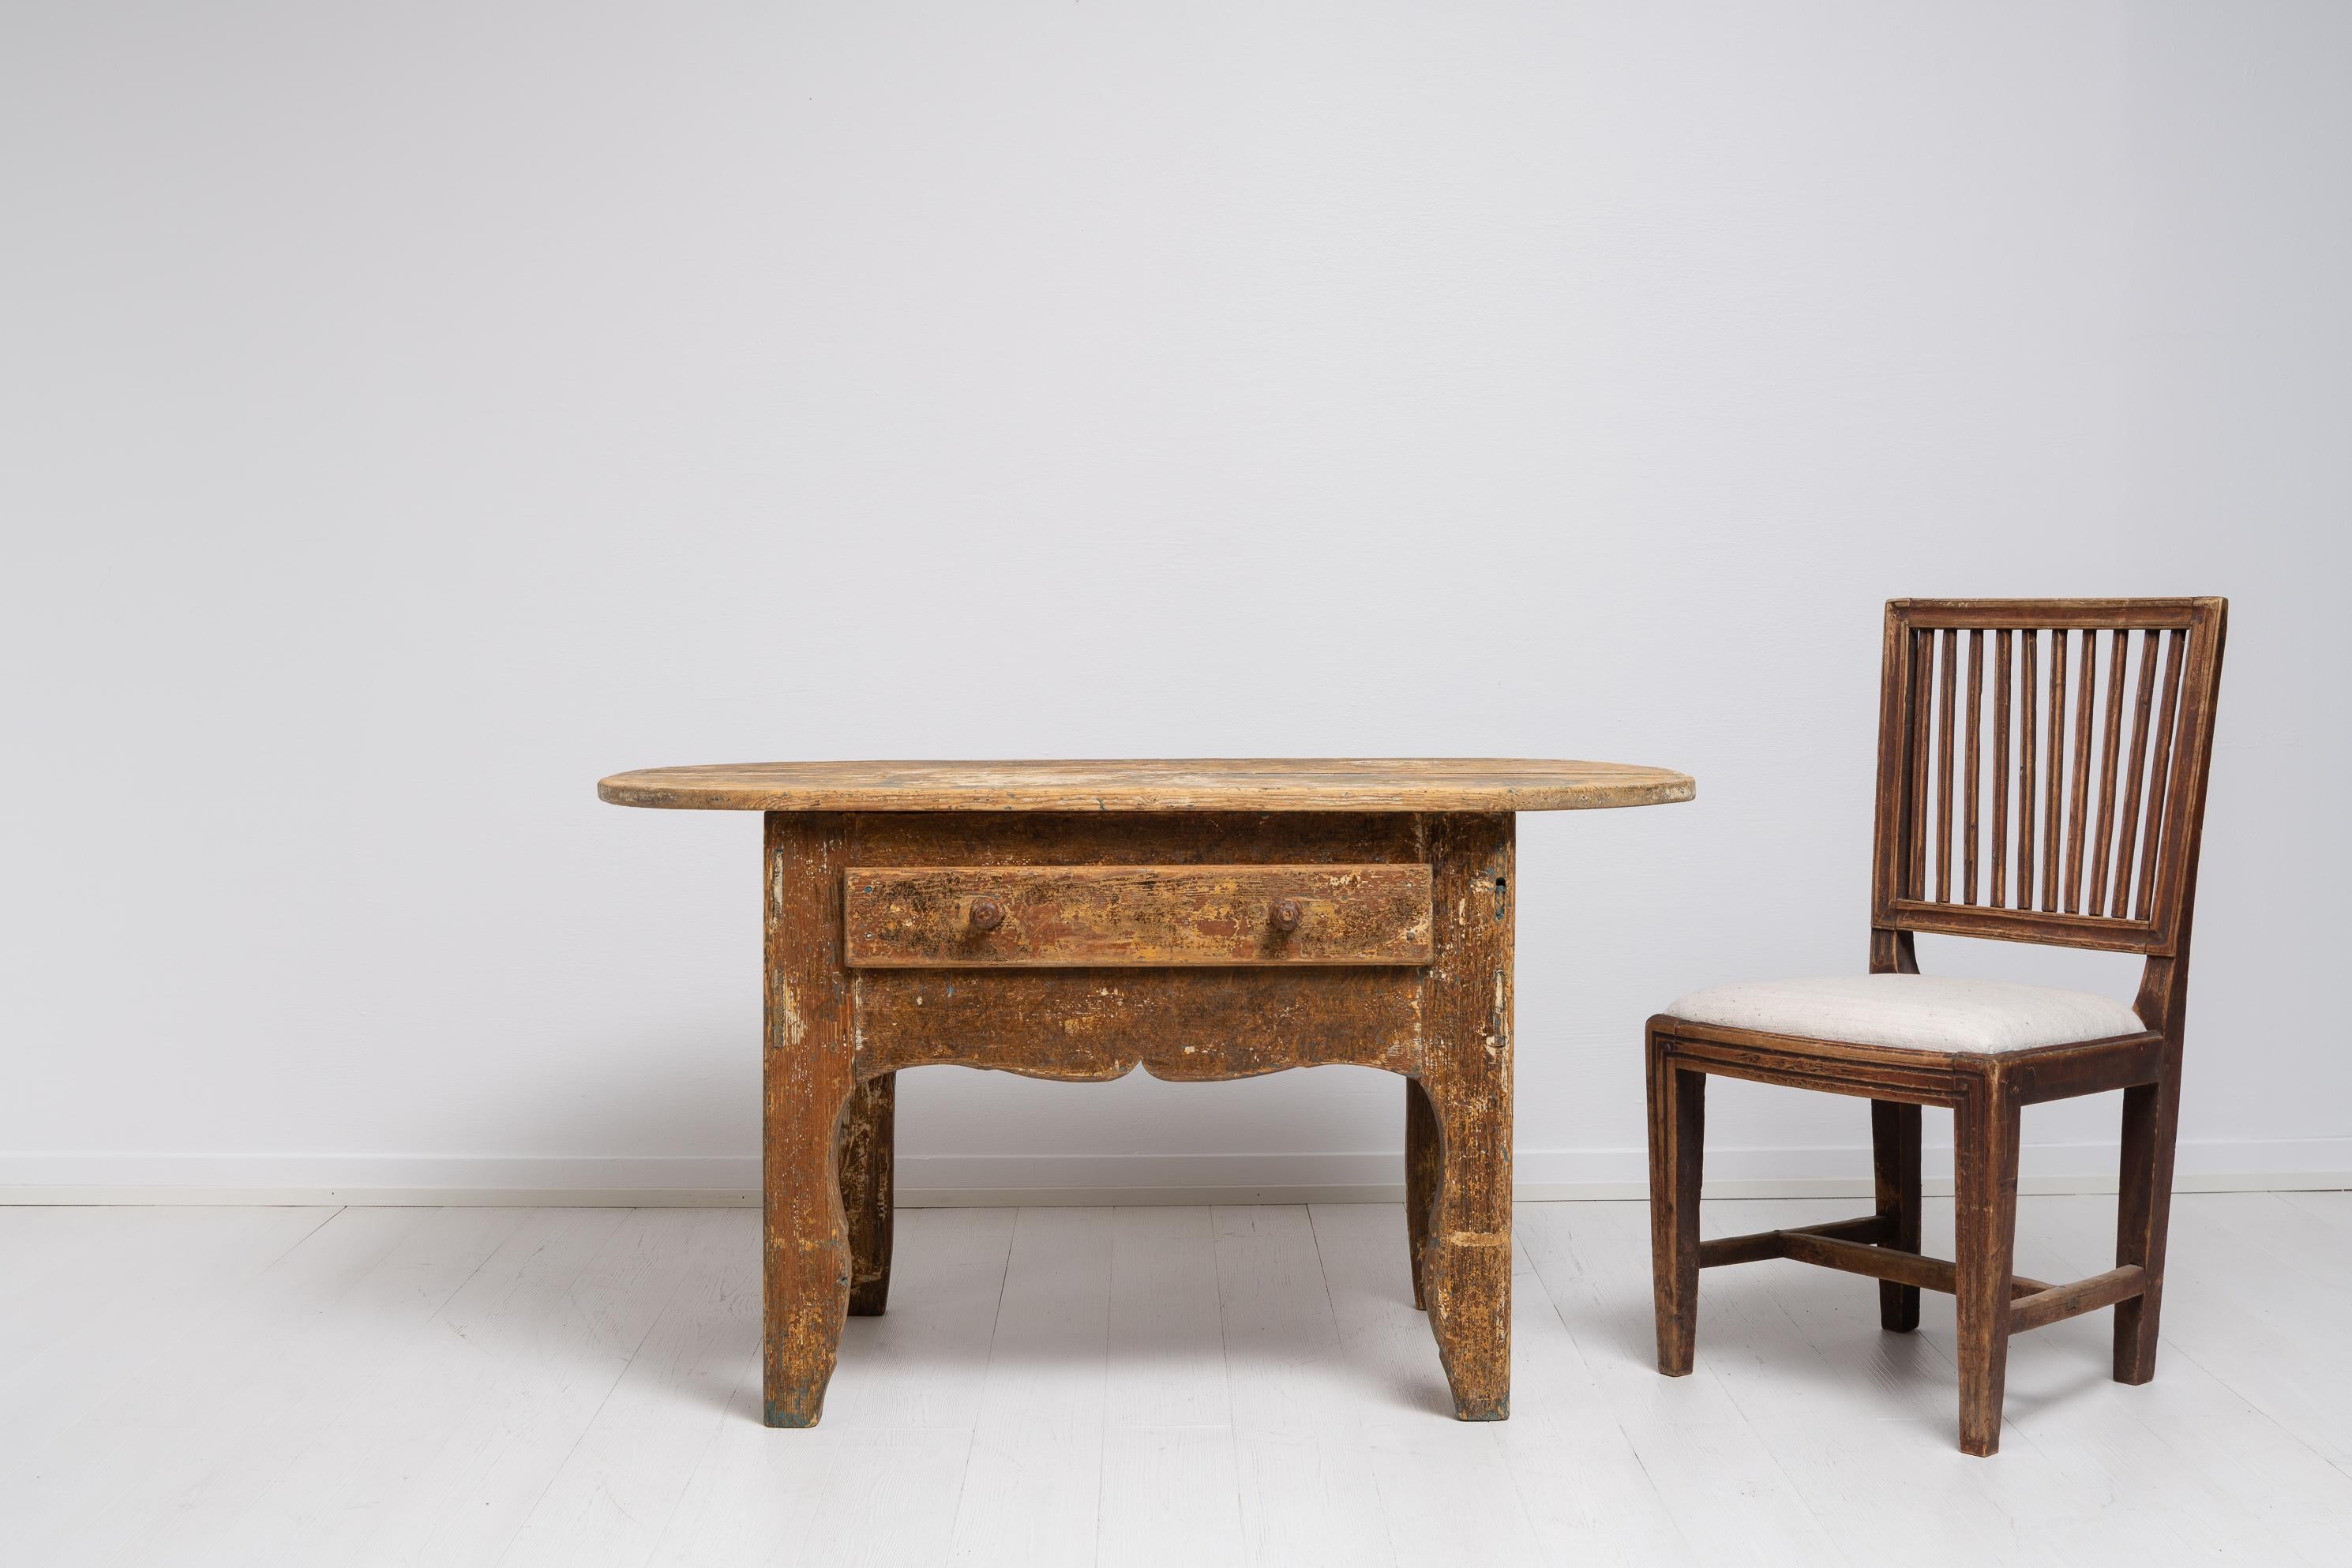 Table Folk Art Rococo en pin peint. Cette table est un rare meuble de maison de campagne du nord de la Suède, fabriqué à la fin des années 1700. Il est bas et charmant avec la patine vieillie et les petits détails. Il s'agit d'une table